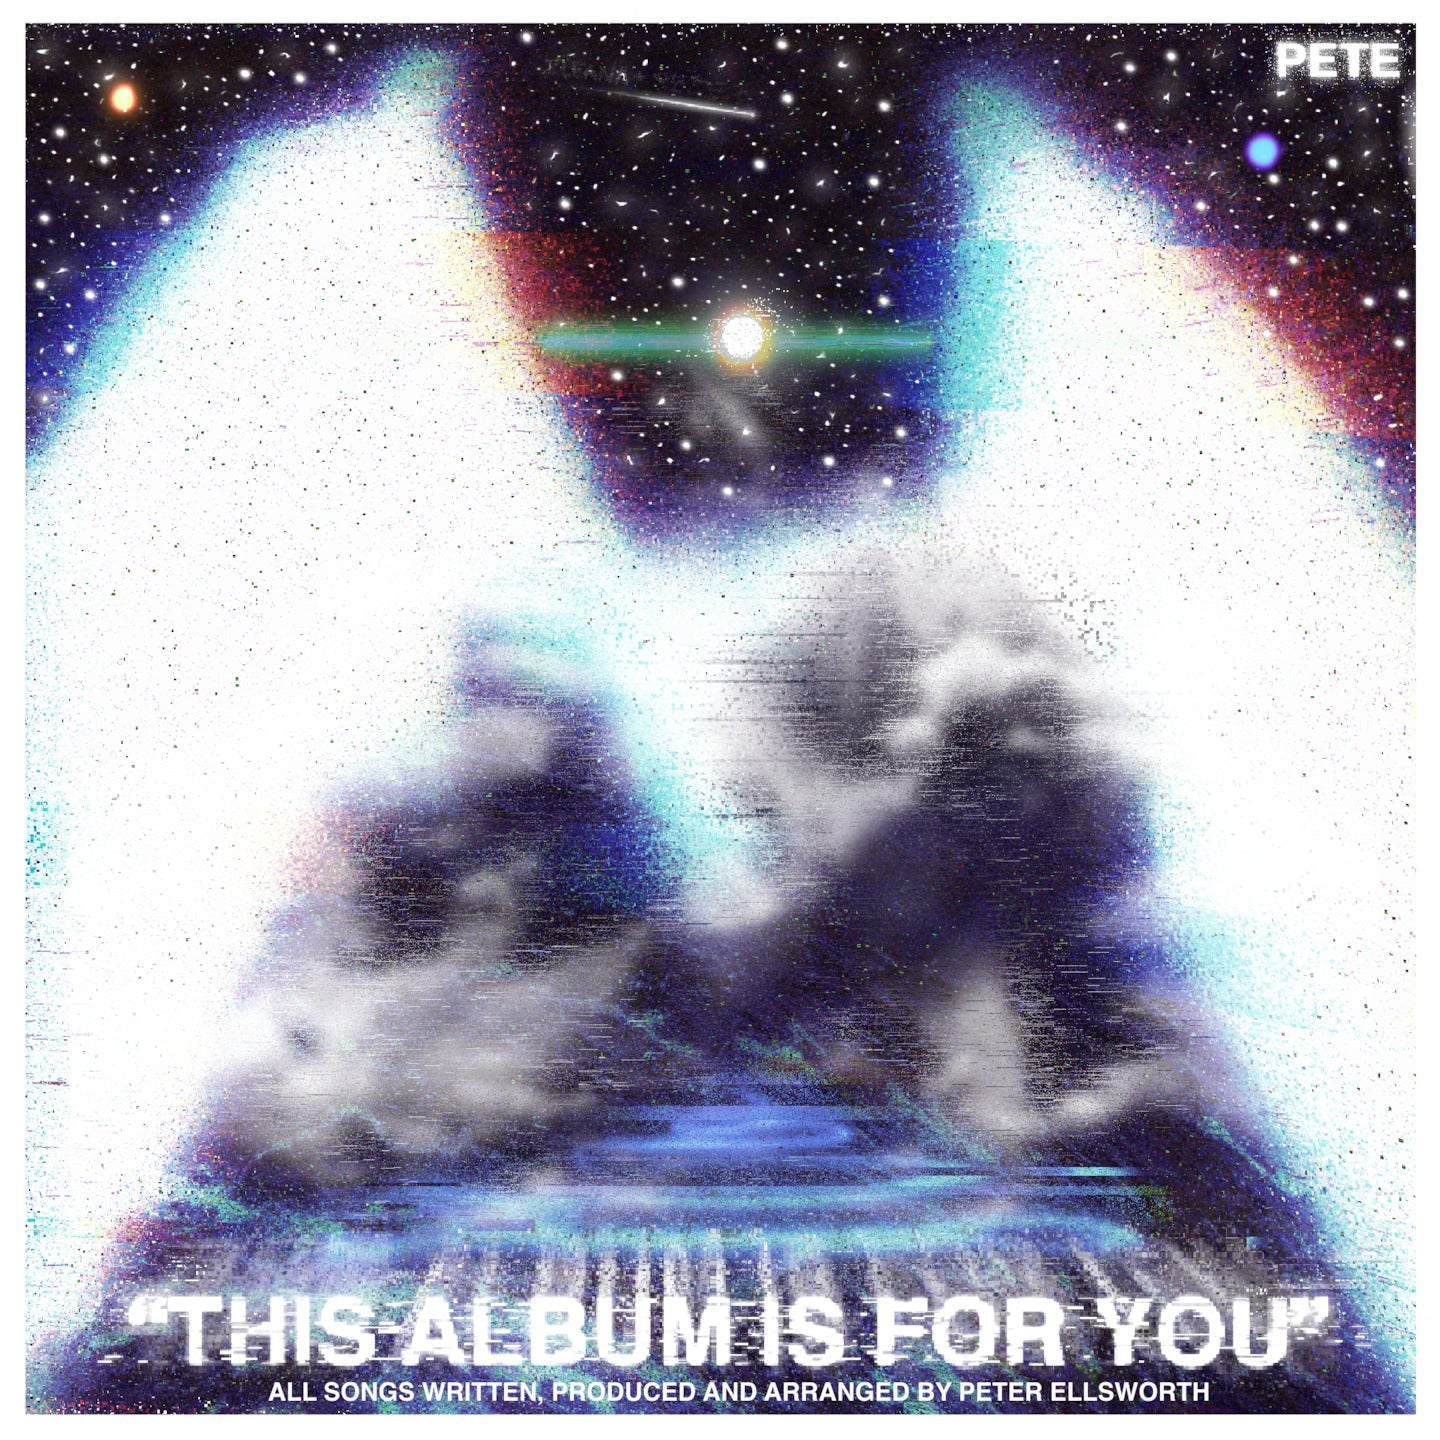 "THIS ALBUM IS FOR YOU" DIGITAL ALBUM